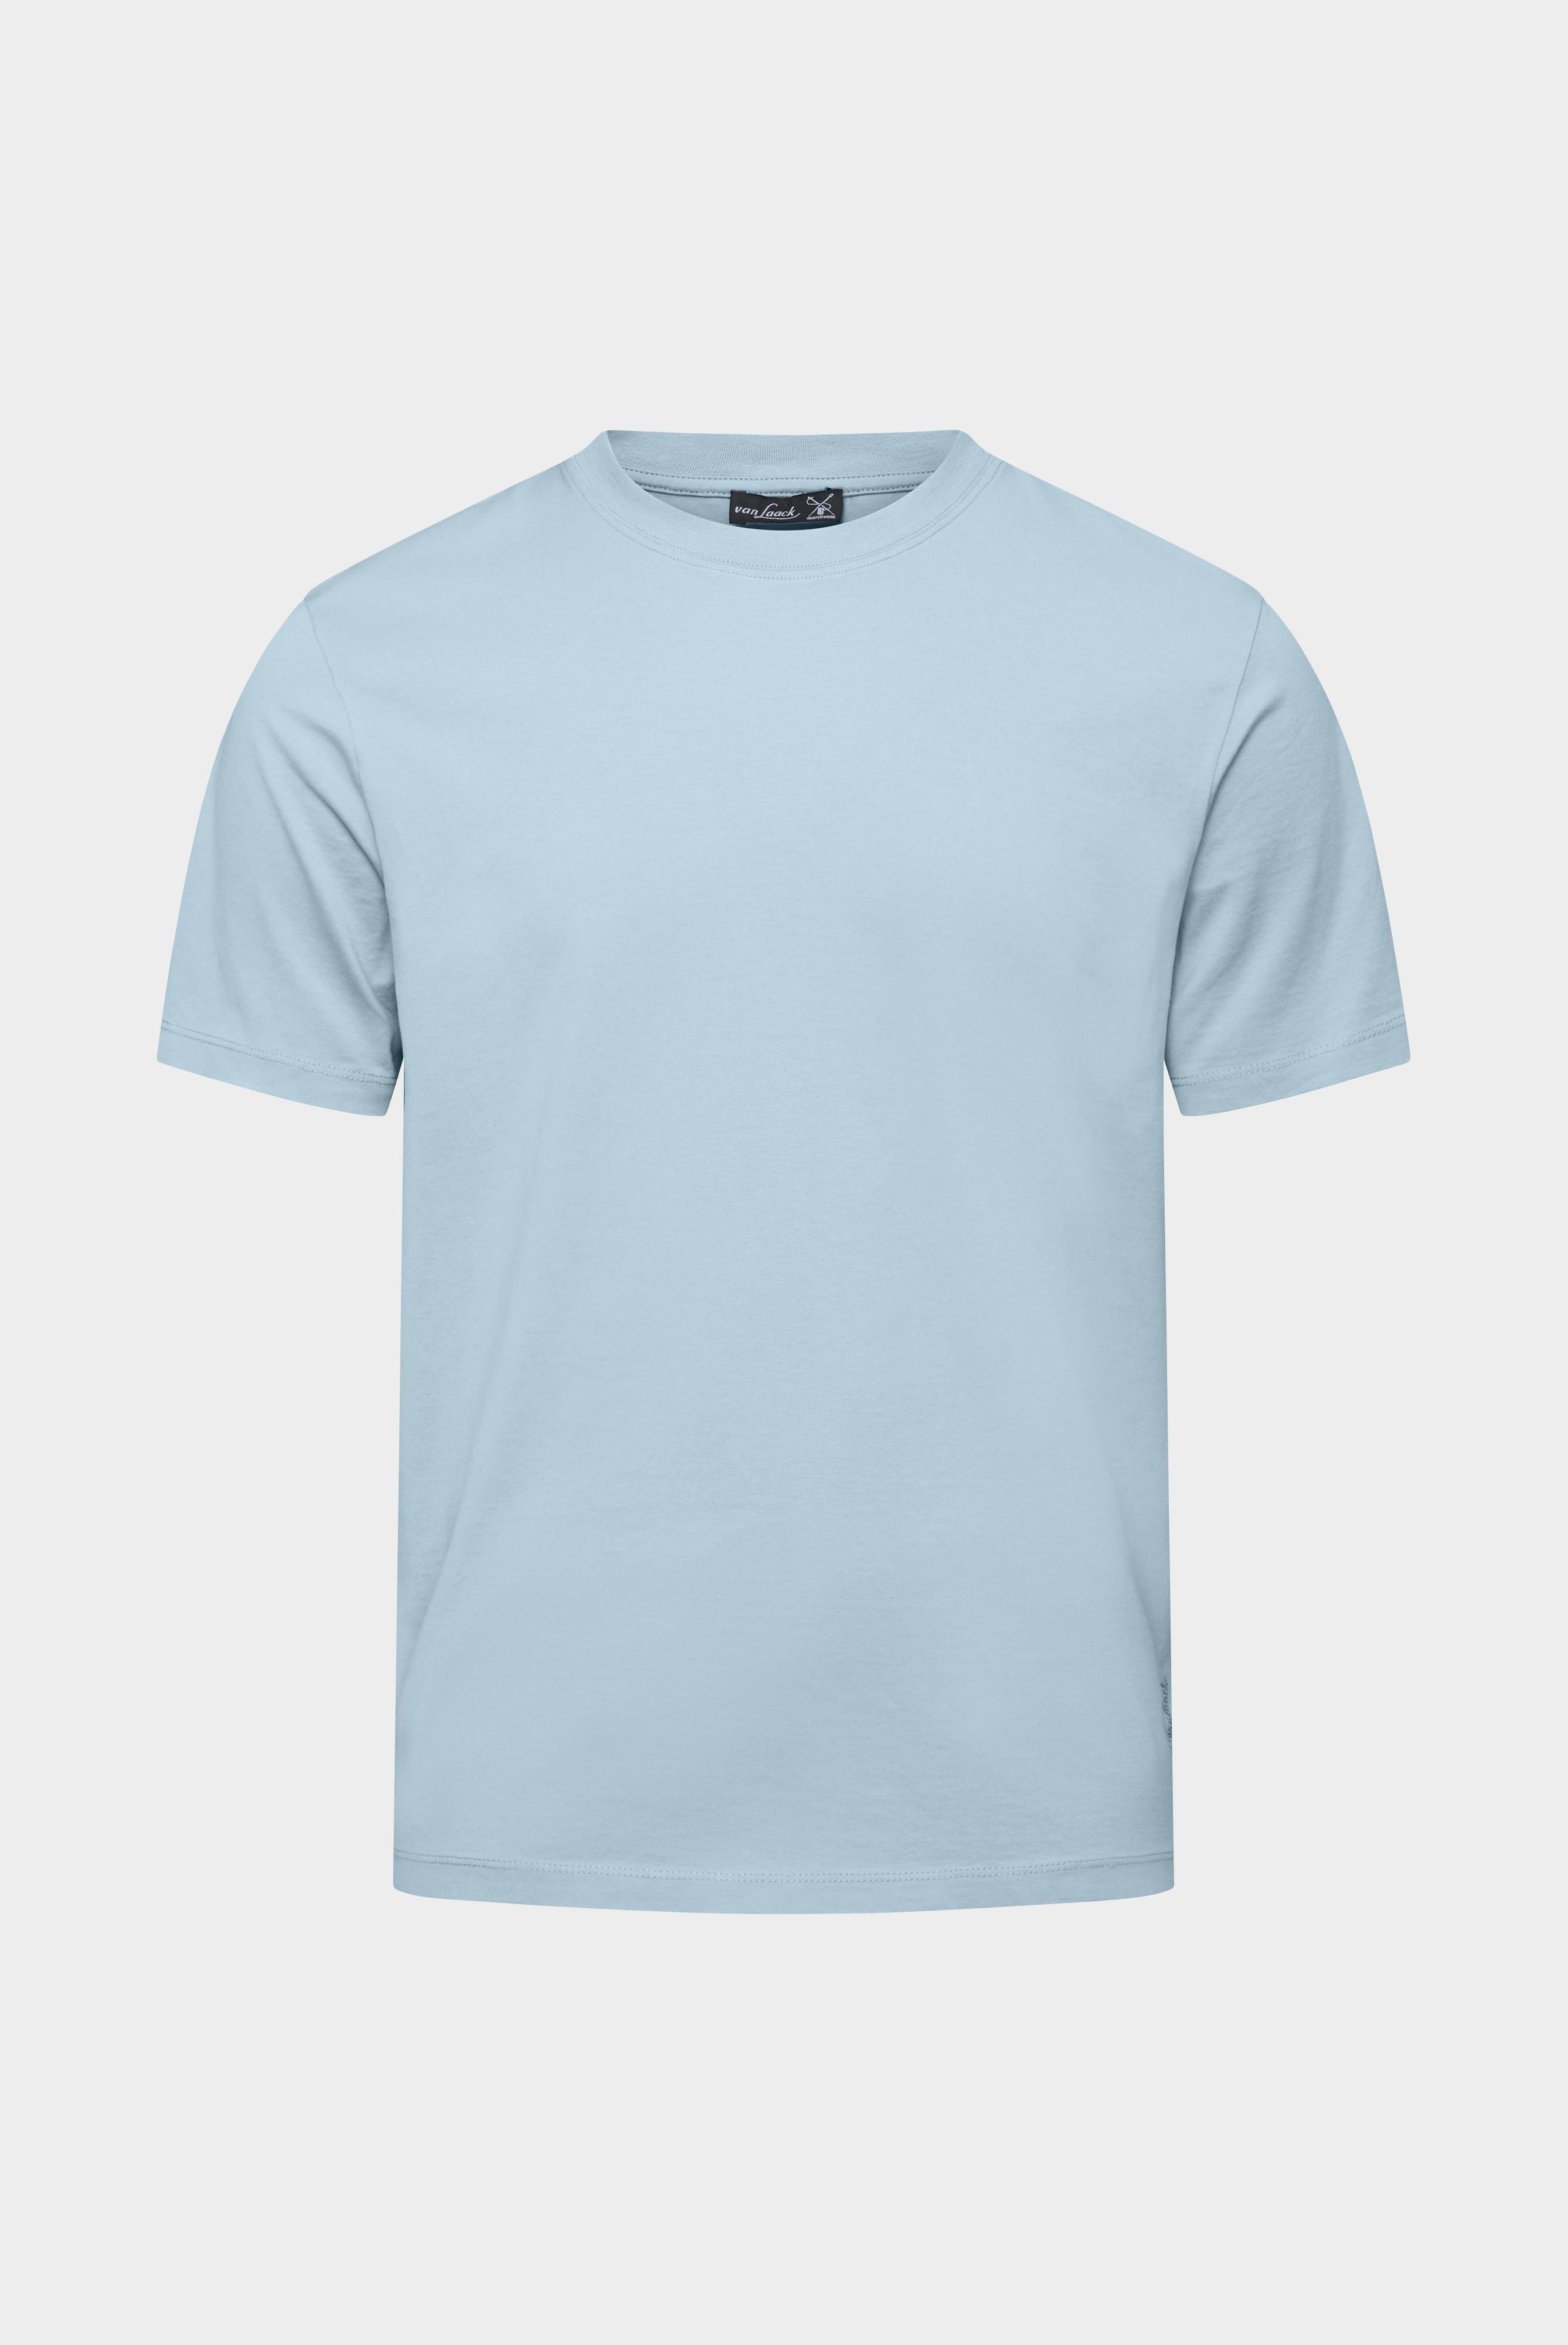 T-Shirts+T-Shirt aus langstapeliger Baumwolle+20.1660..Z20044.720.L